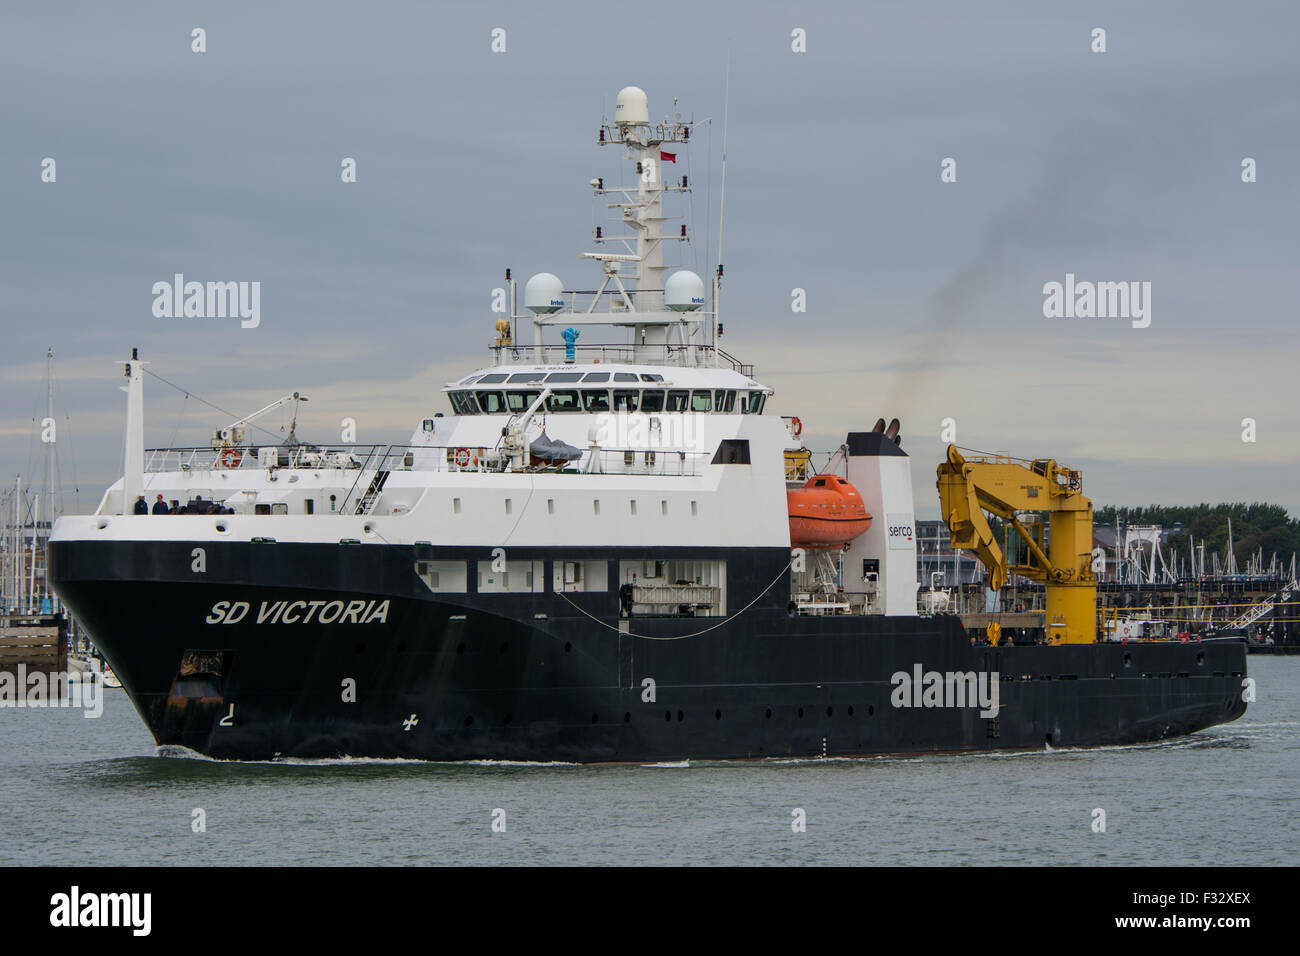 Die Serco Marine Services (Handelsmarine) bemannte MOD Global Support Schiff SD Victoria in Portsmouth, Großbritannien am 4. September 2015. Stockfoto